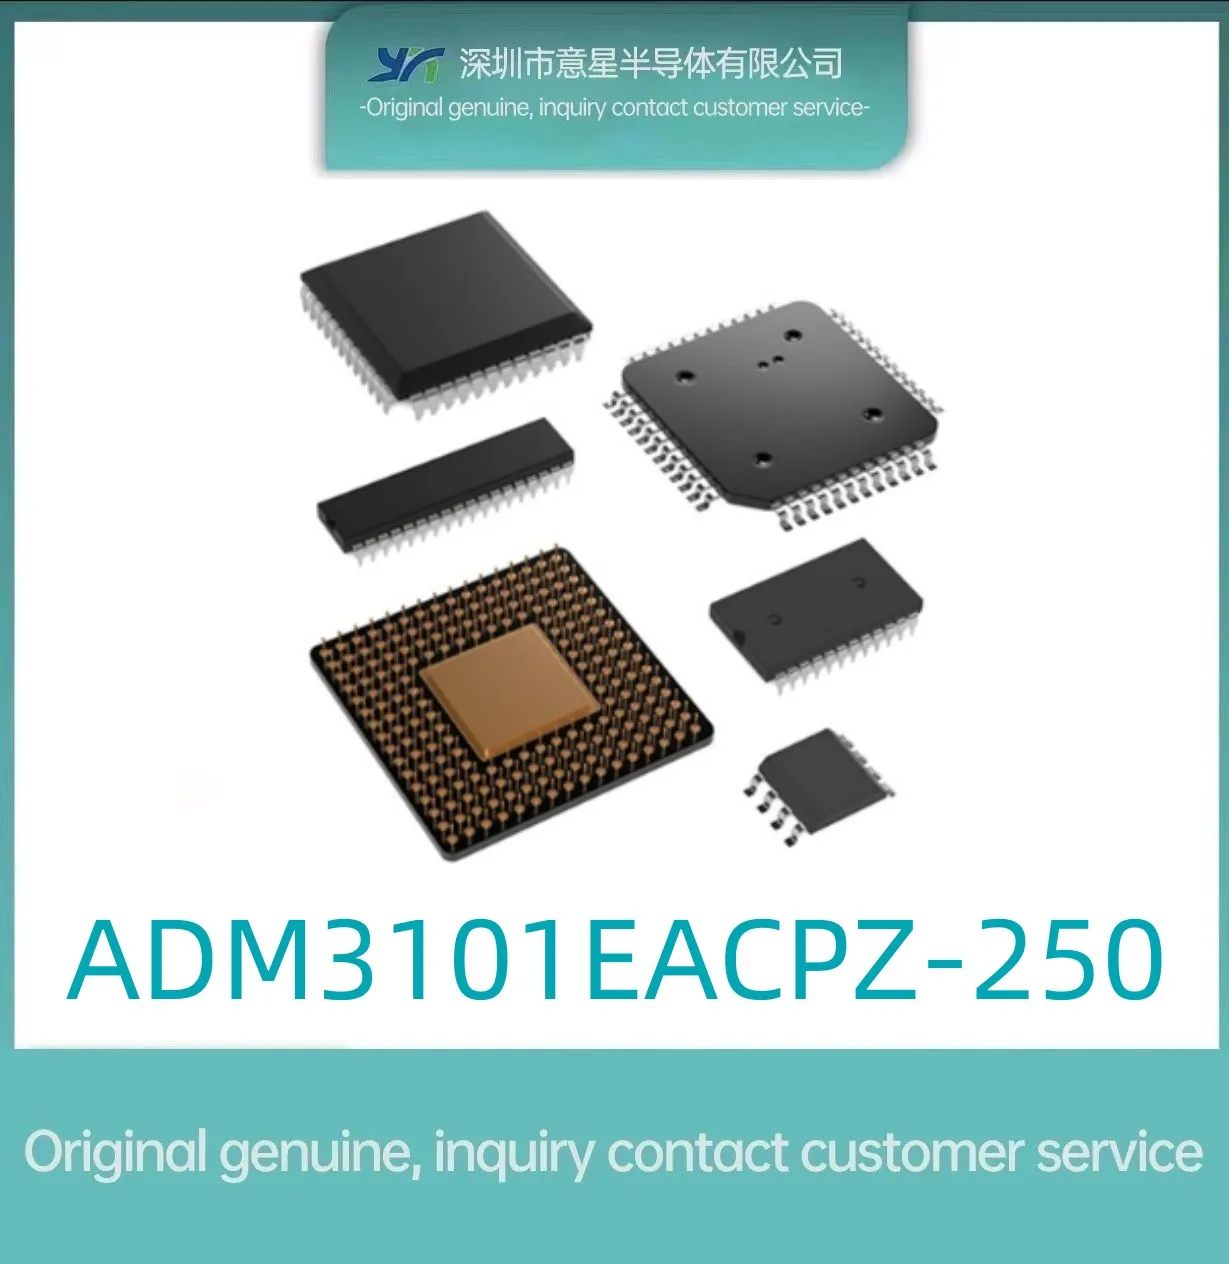 Пакет ADM3101EACPZ-250 интерфейс LFCSP12 интегрална схема оригиналната автентична